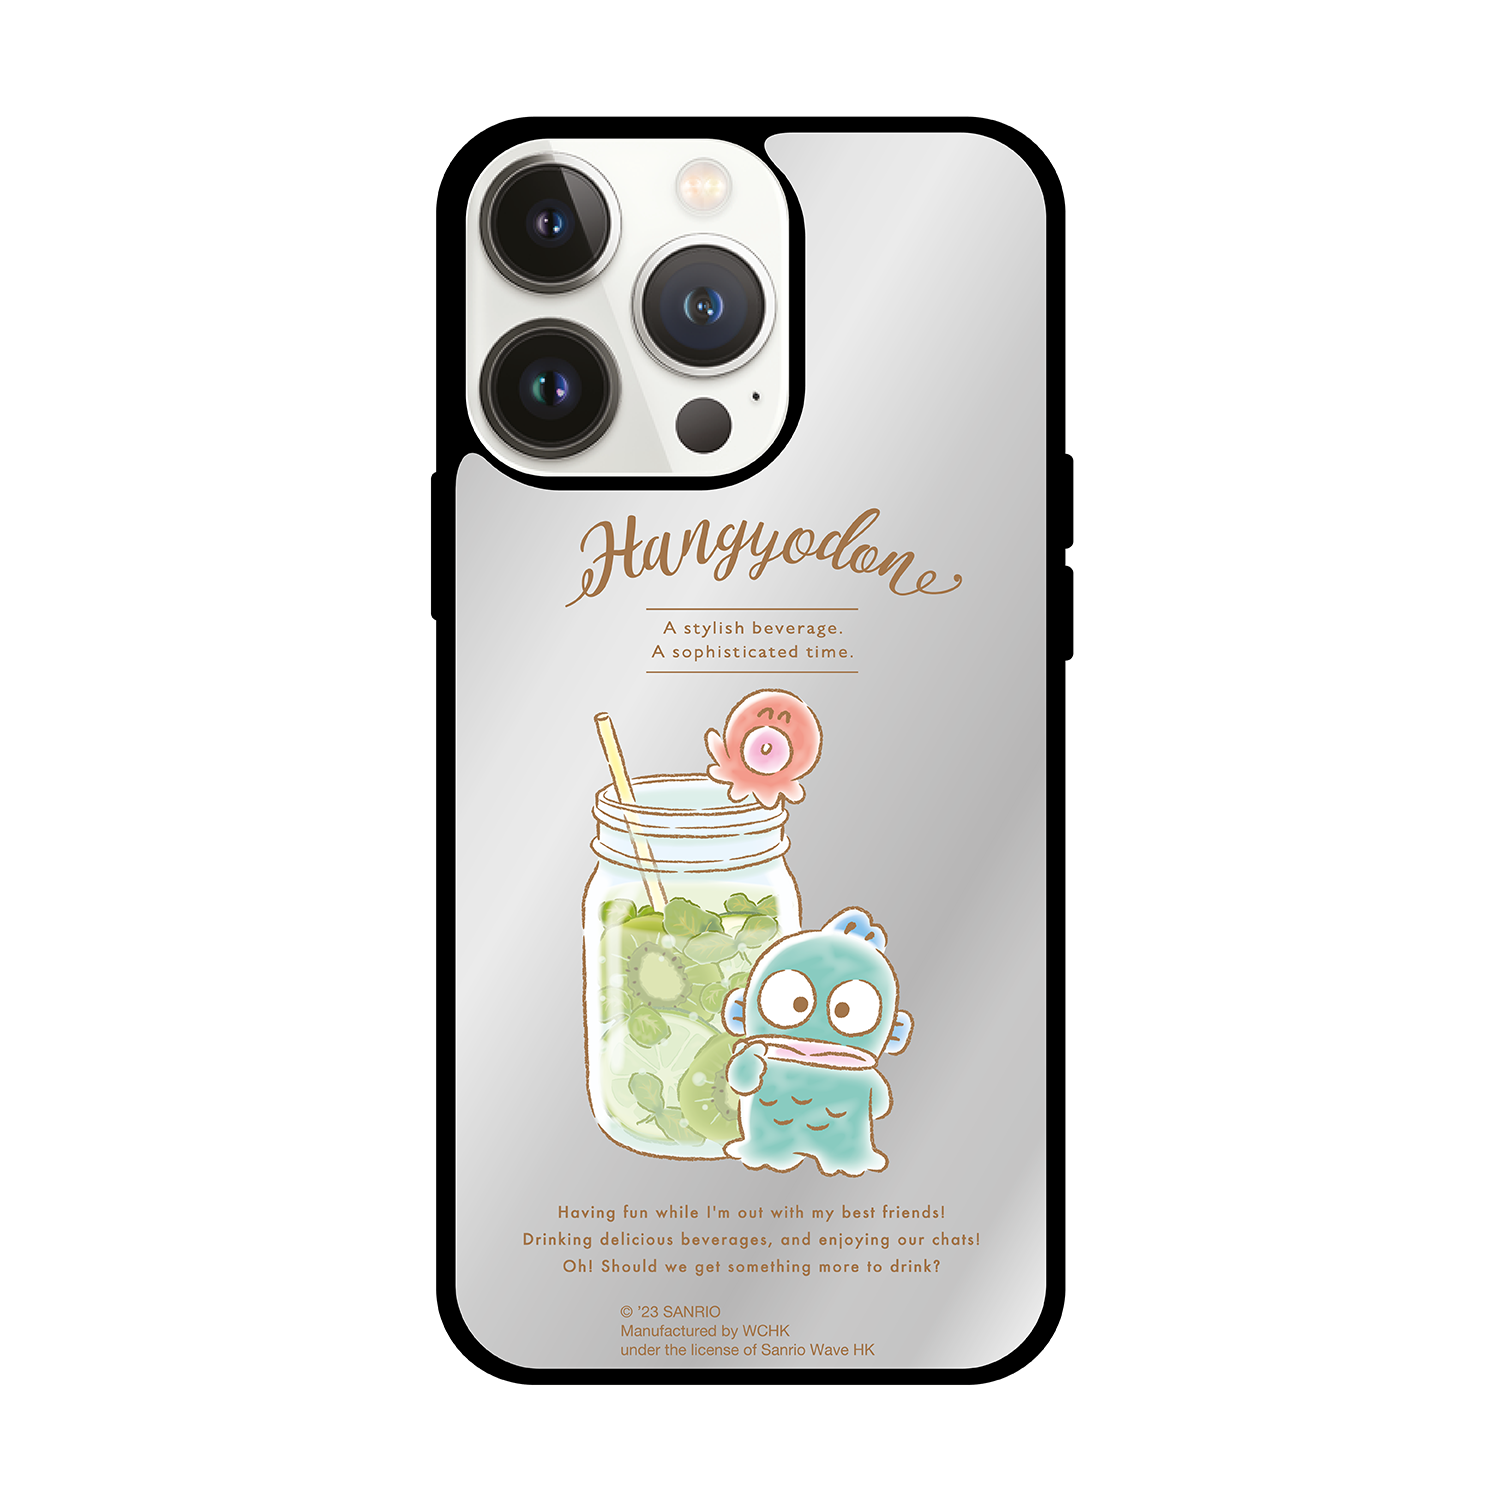 Han-GyoDon iPhone Mirror Case / Samsung Mirror Case (HG97M)